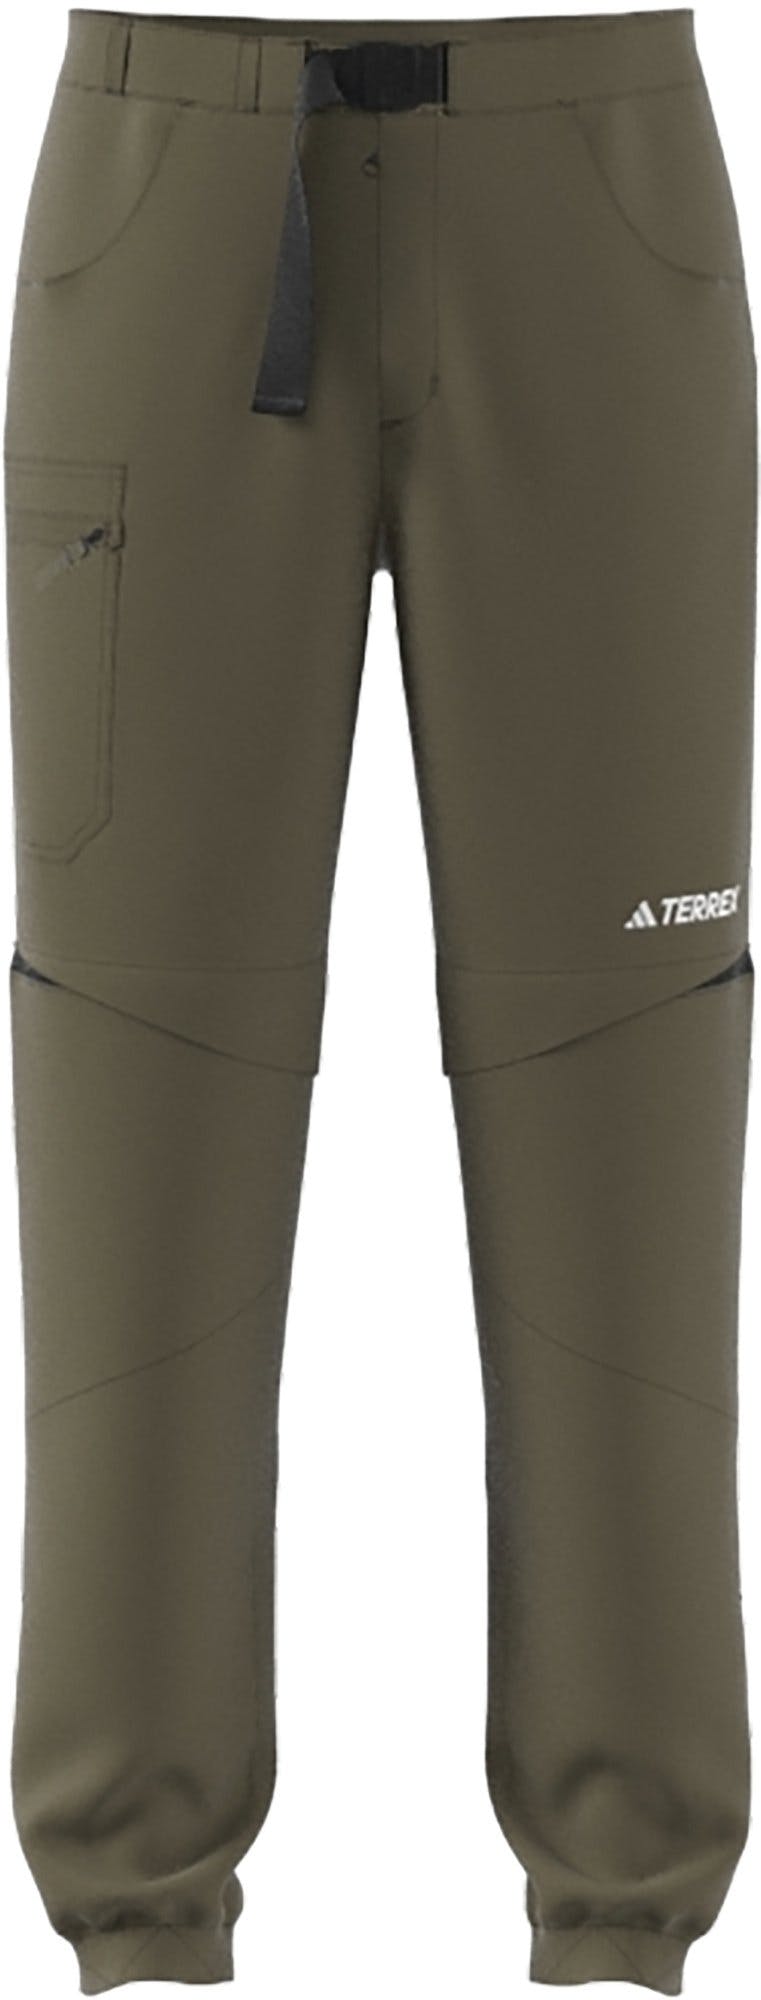 Product image for Terrex Utilitas Zip-Off Hiking Pants - Men's